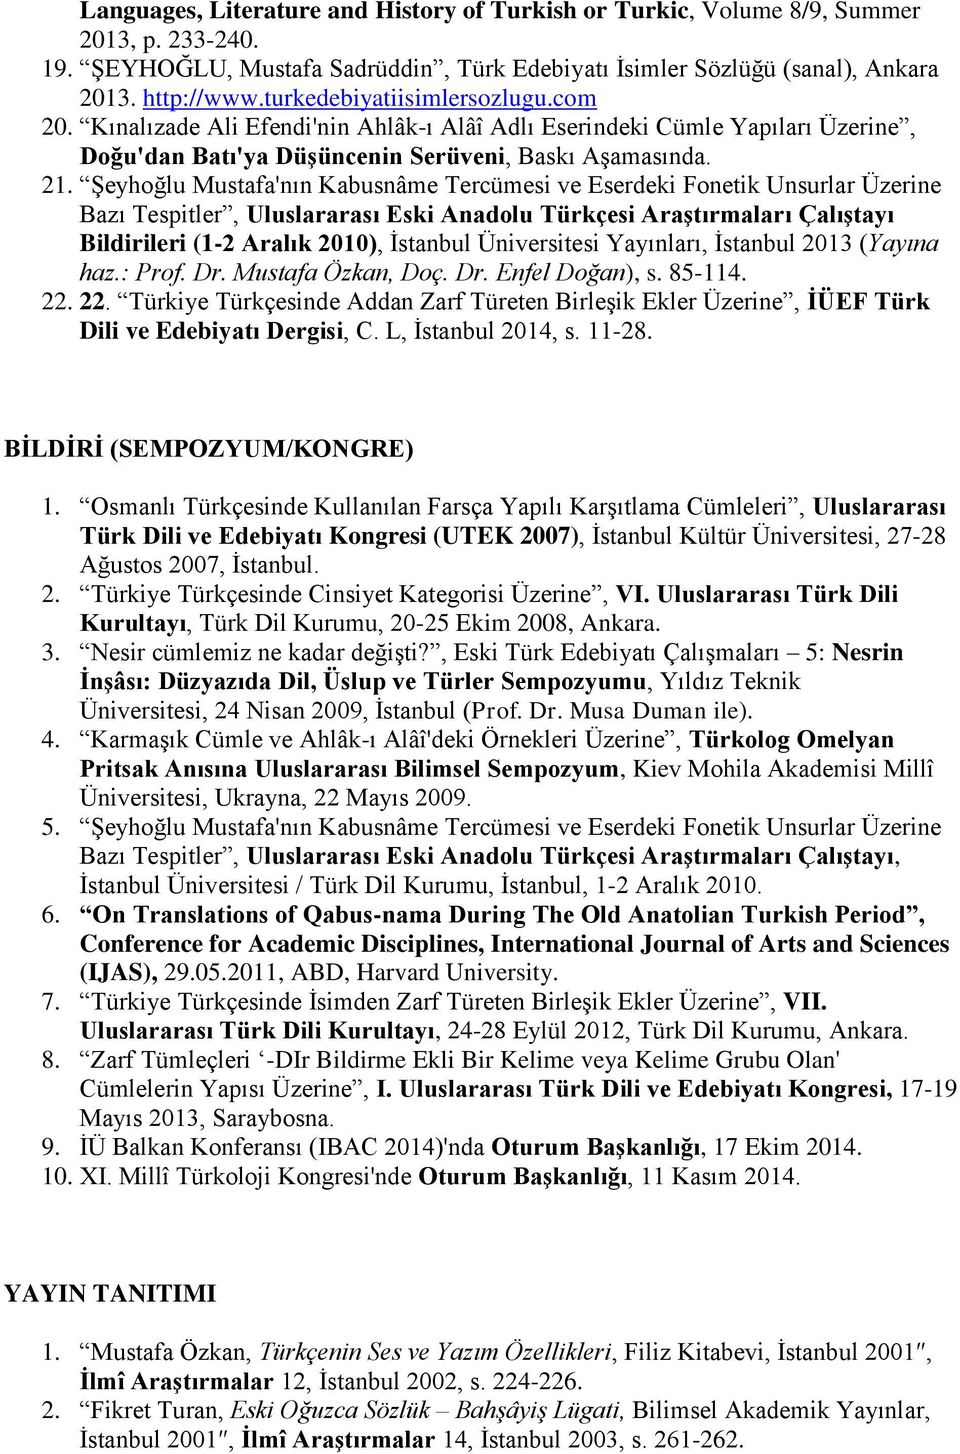 Şeyhoğlu Mustafa'nın Kabusnâme Tercümesi ve Eserdeki Fonetik Unsurlar Üzerine Bazı Tespitler, Uluslararası Eski Anadolu Türkçesi Araştırmaları Çalıştayı Bildirileri (1-2 Aralık 2010), İstanbul